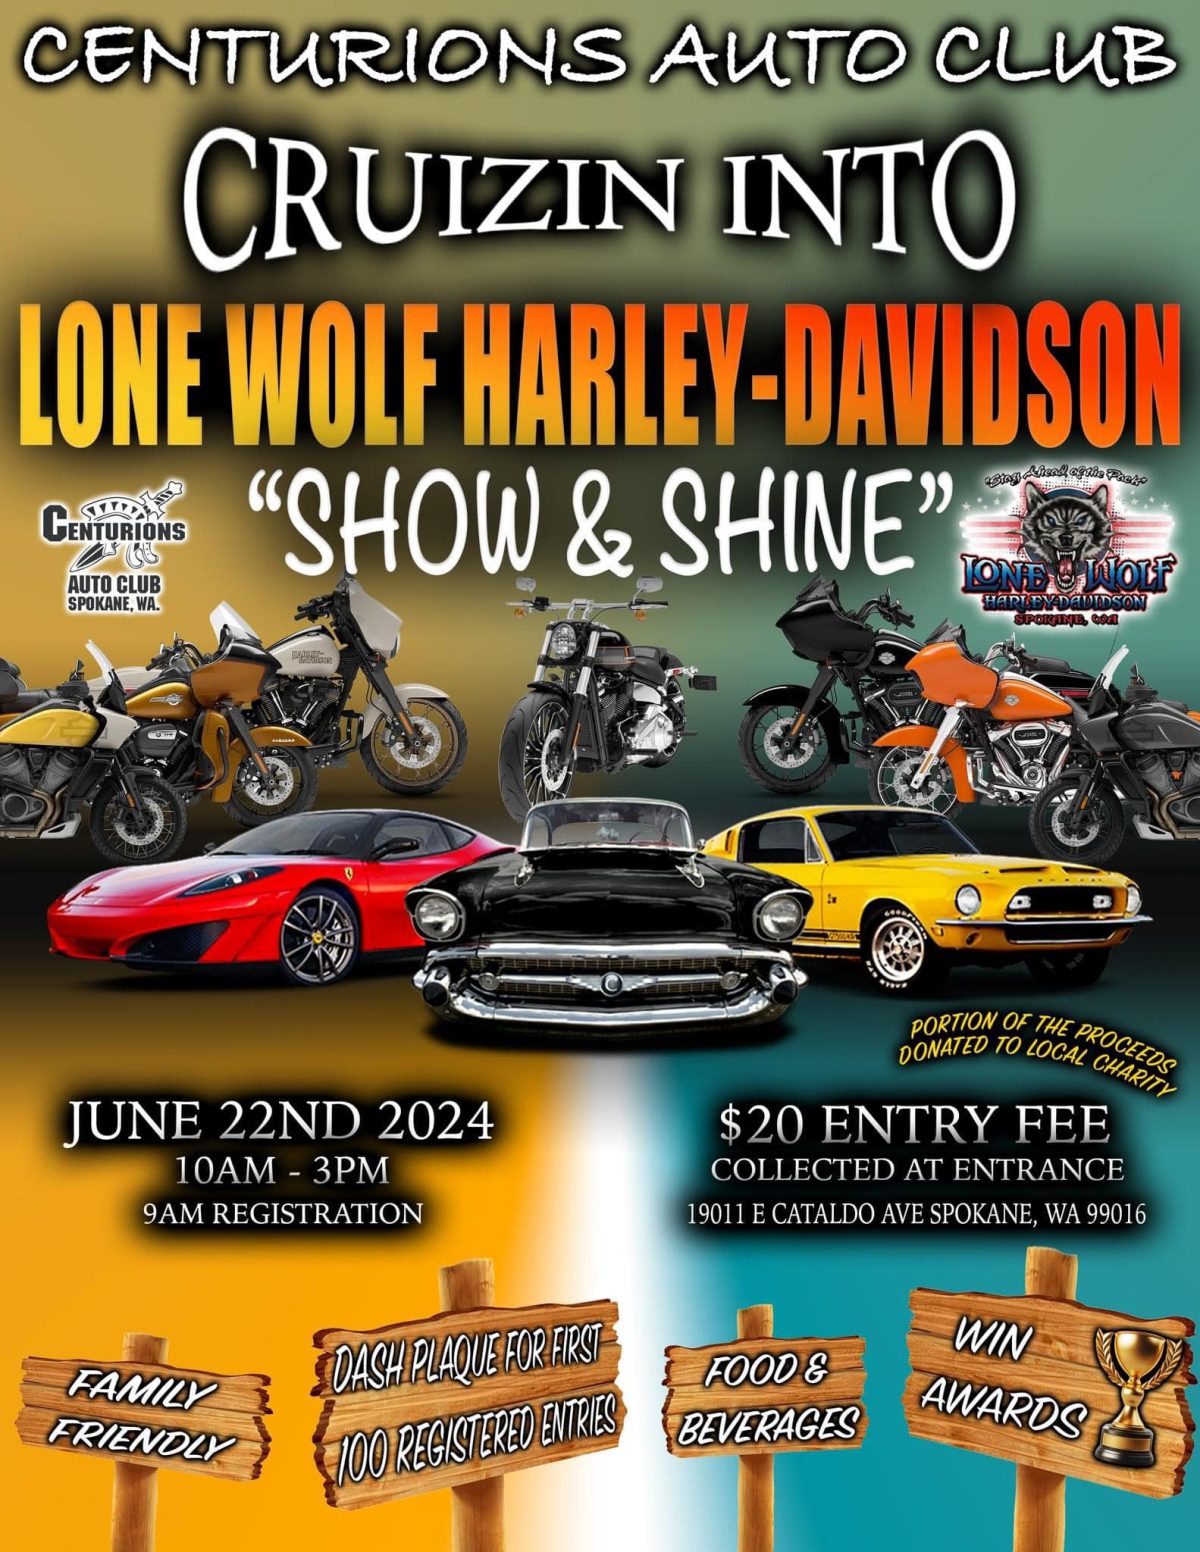 Cruizin into Lone Wolf Harley-Davidson